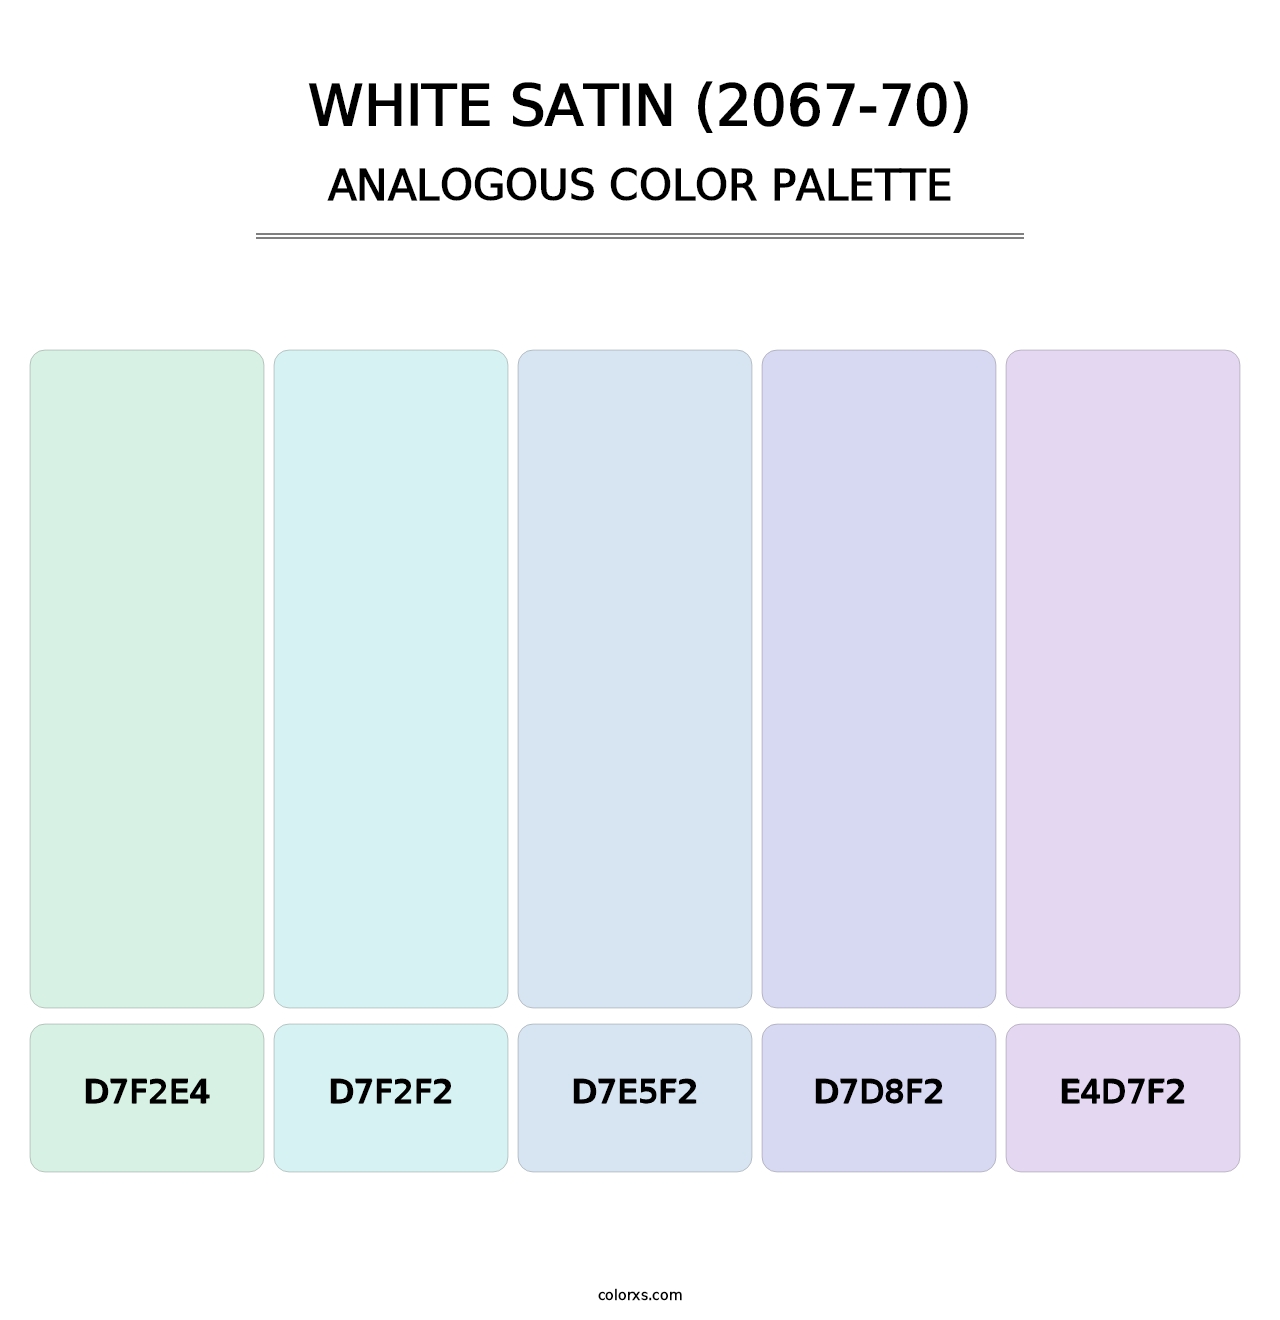 White Satin (2067-70) - Analogous Color Palette